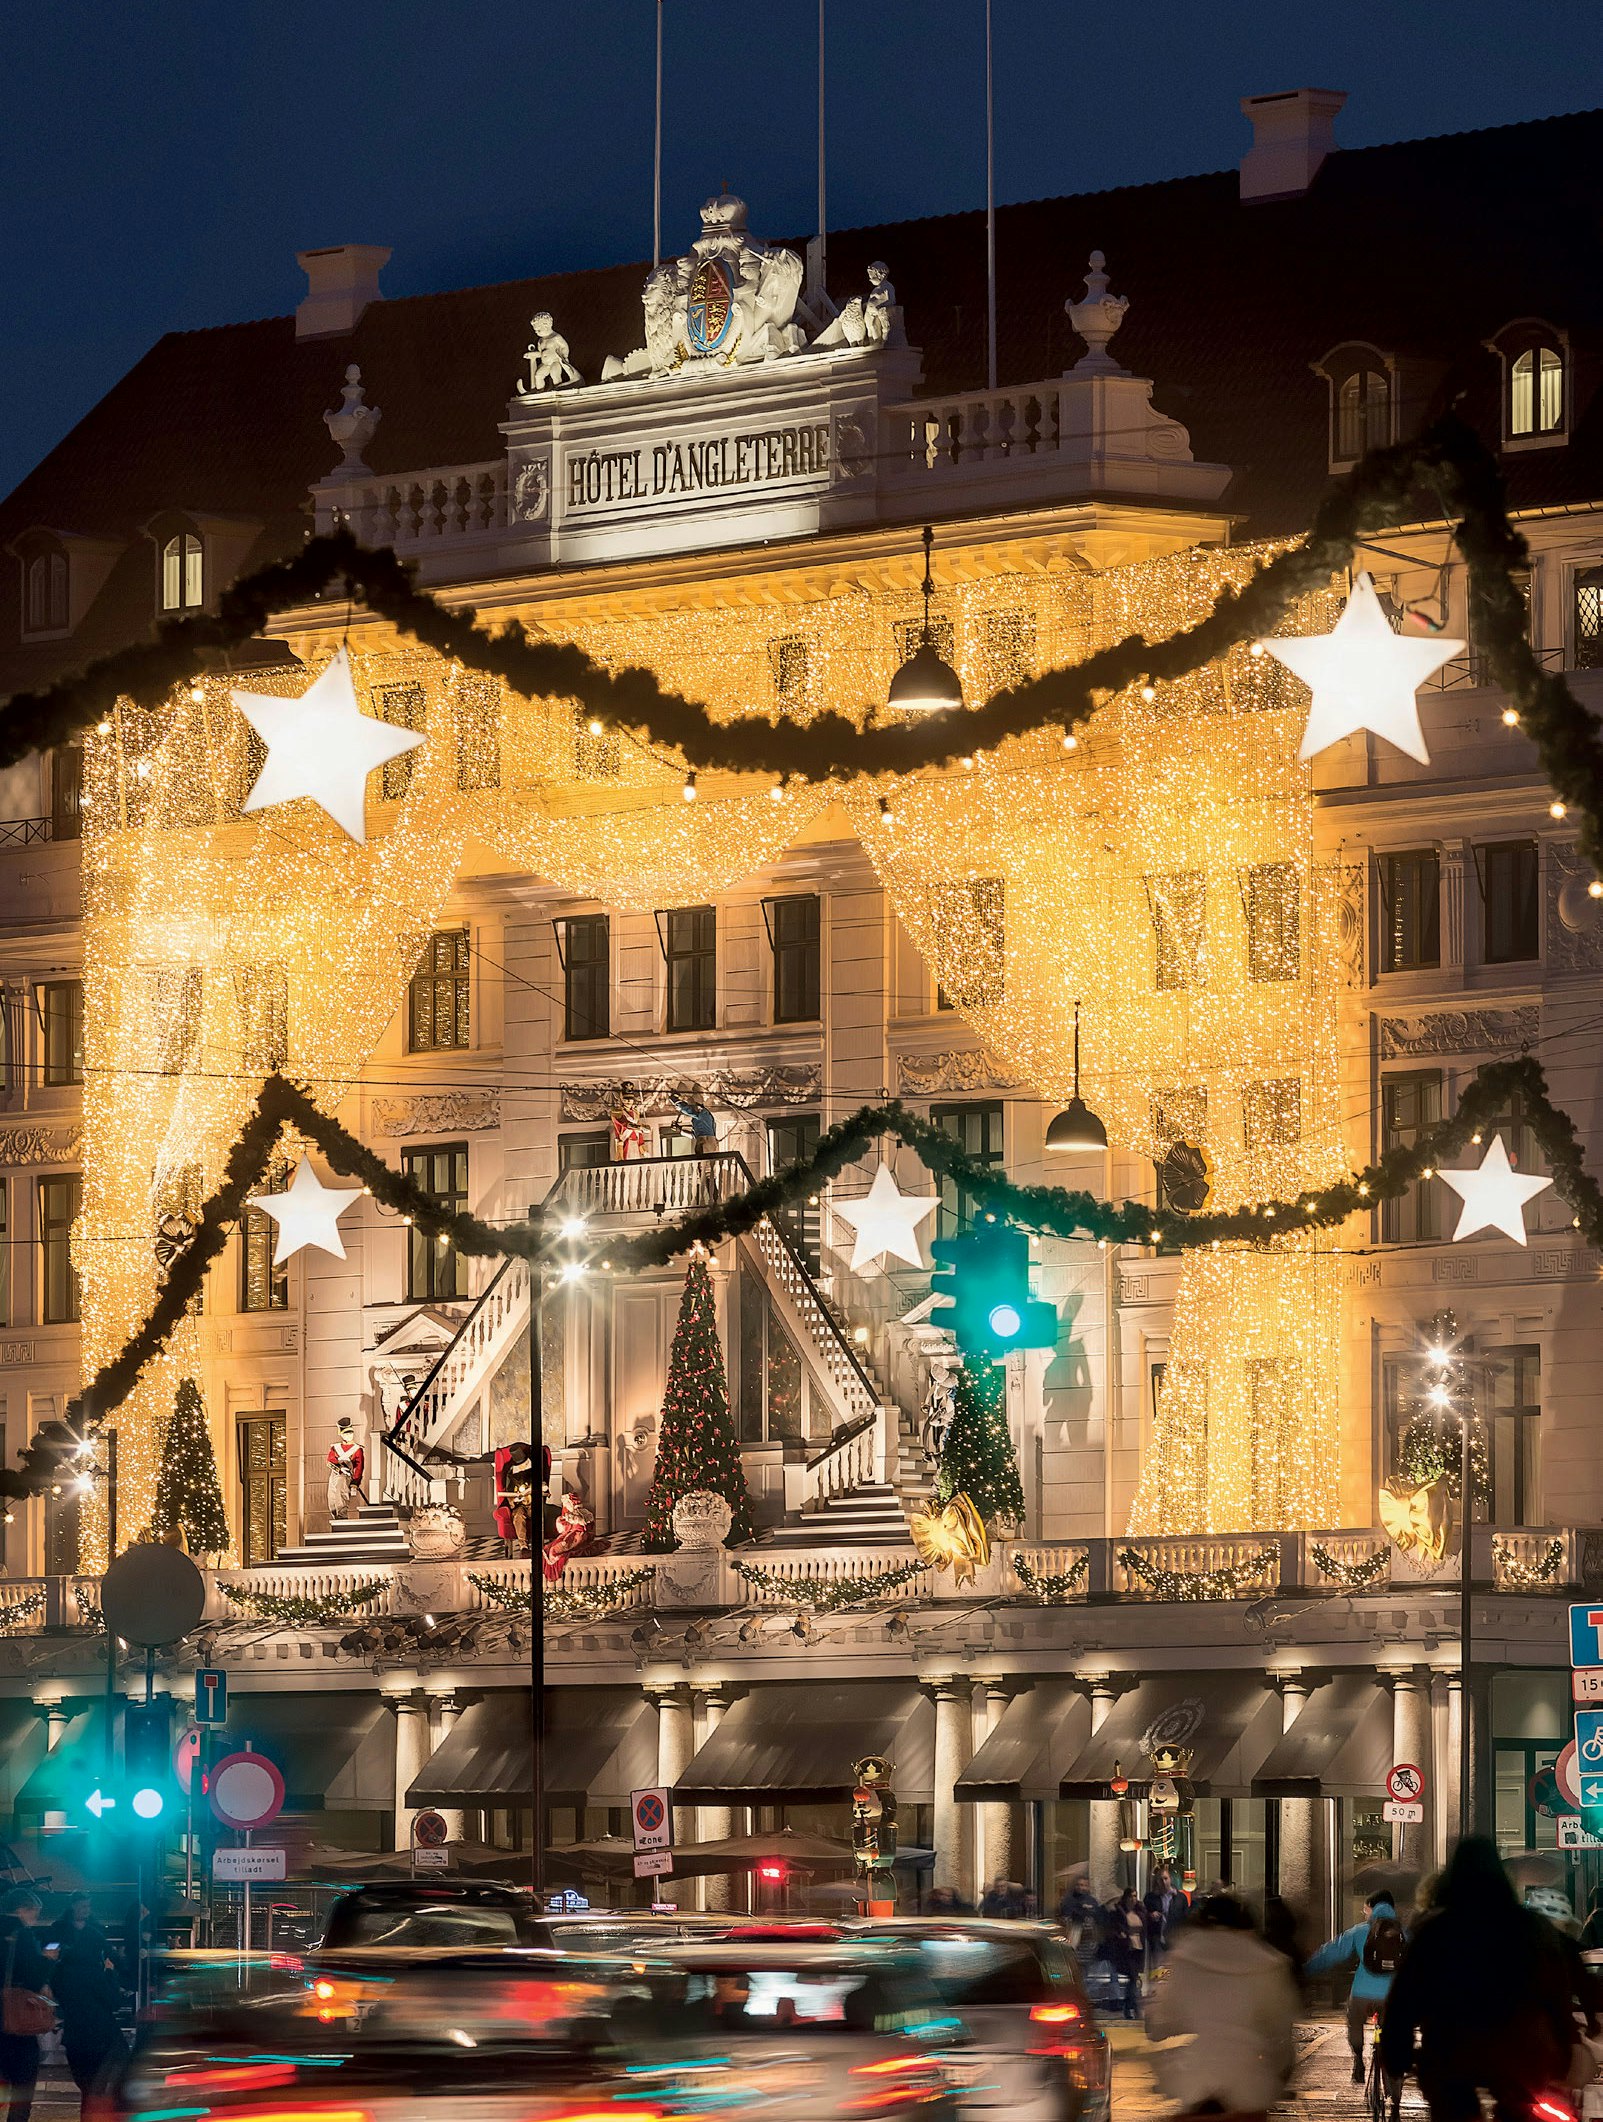 Den 20. november kl. 17.30 tændes julelysene på Hotel d'angleterres facade